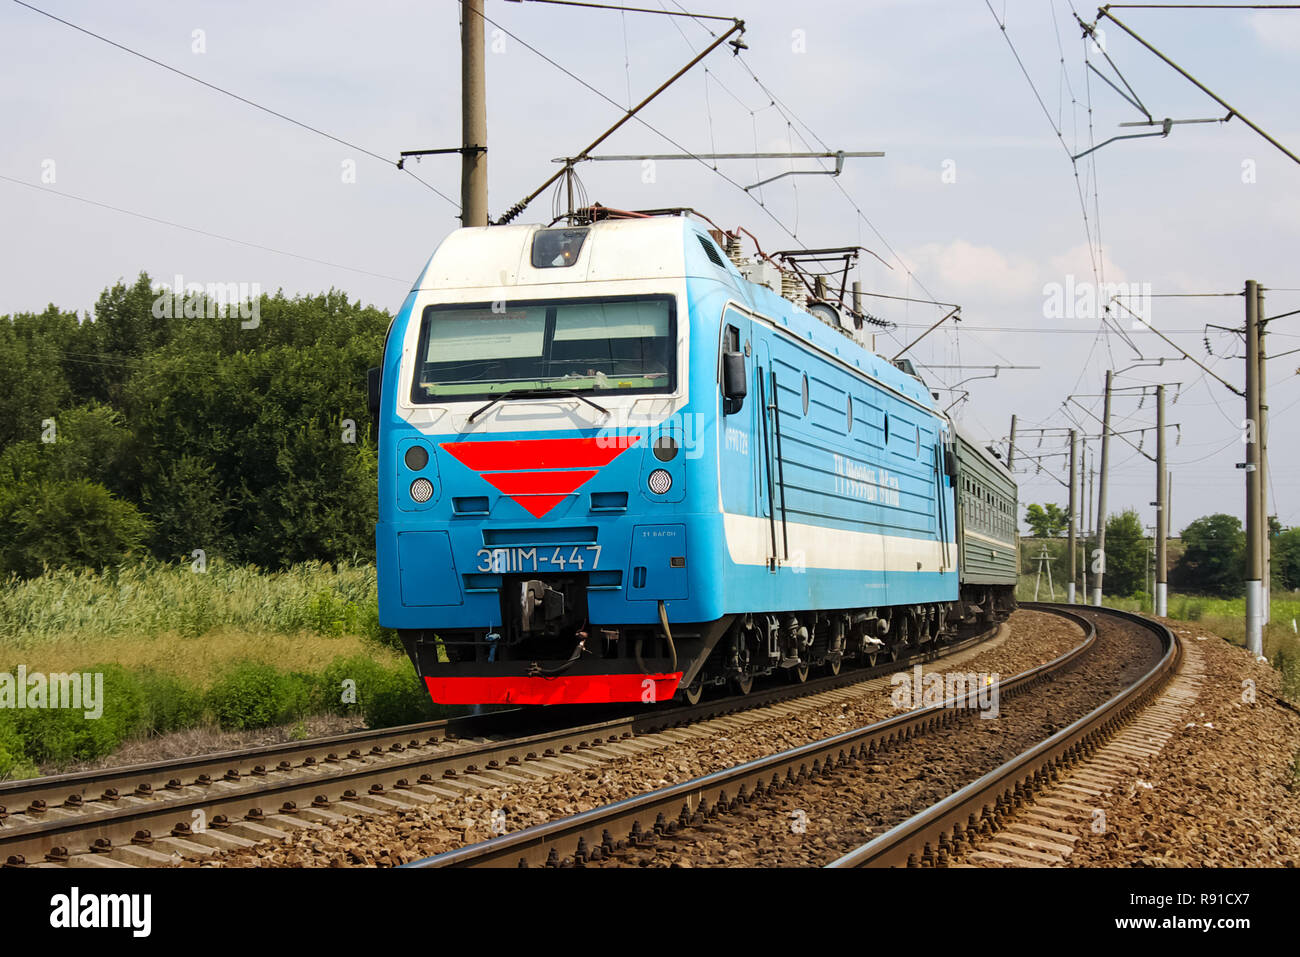 Nowosibirsk, Russland - Juli 20, 2018: Lokomotive oder Motor ist ein Fahrzeug, dass die Motive Power sorgt für einen Zug. Stockfoto